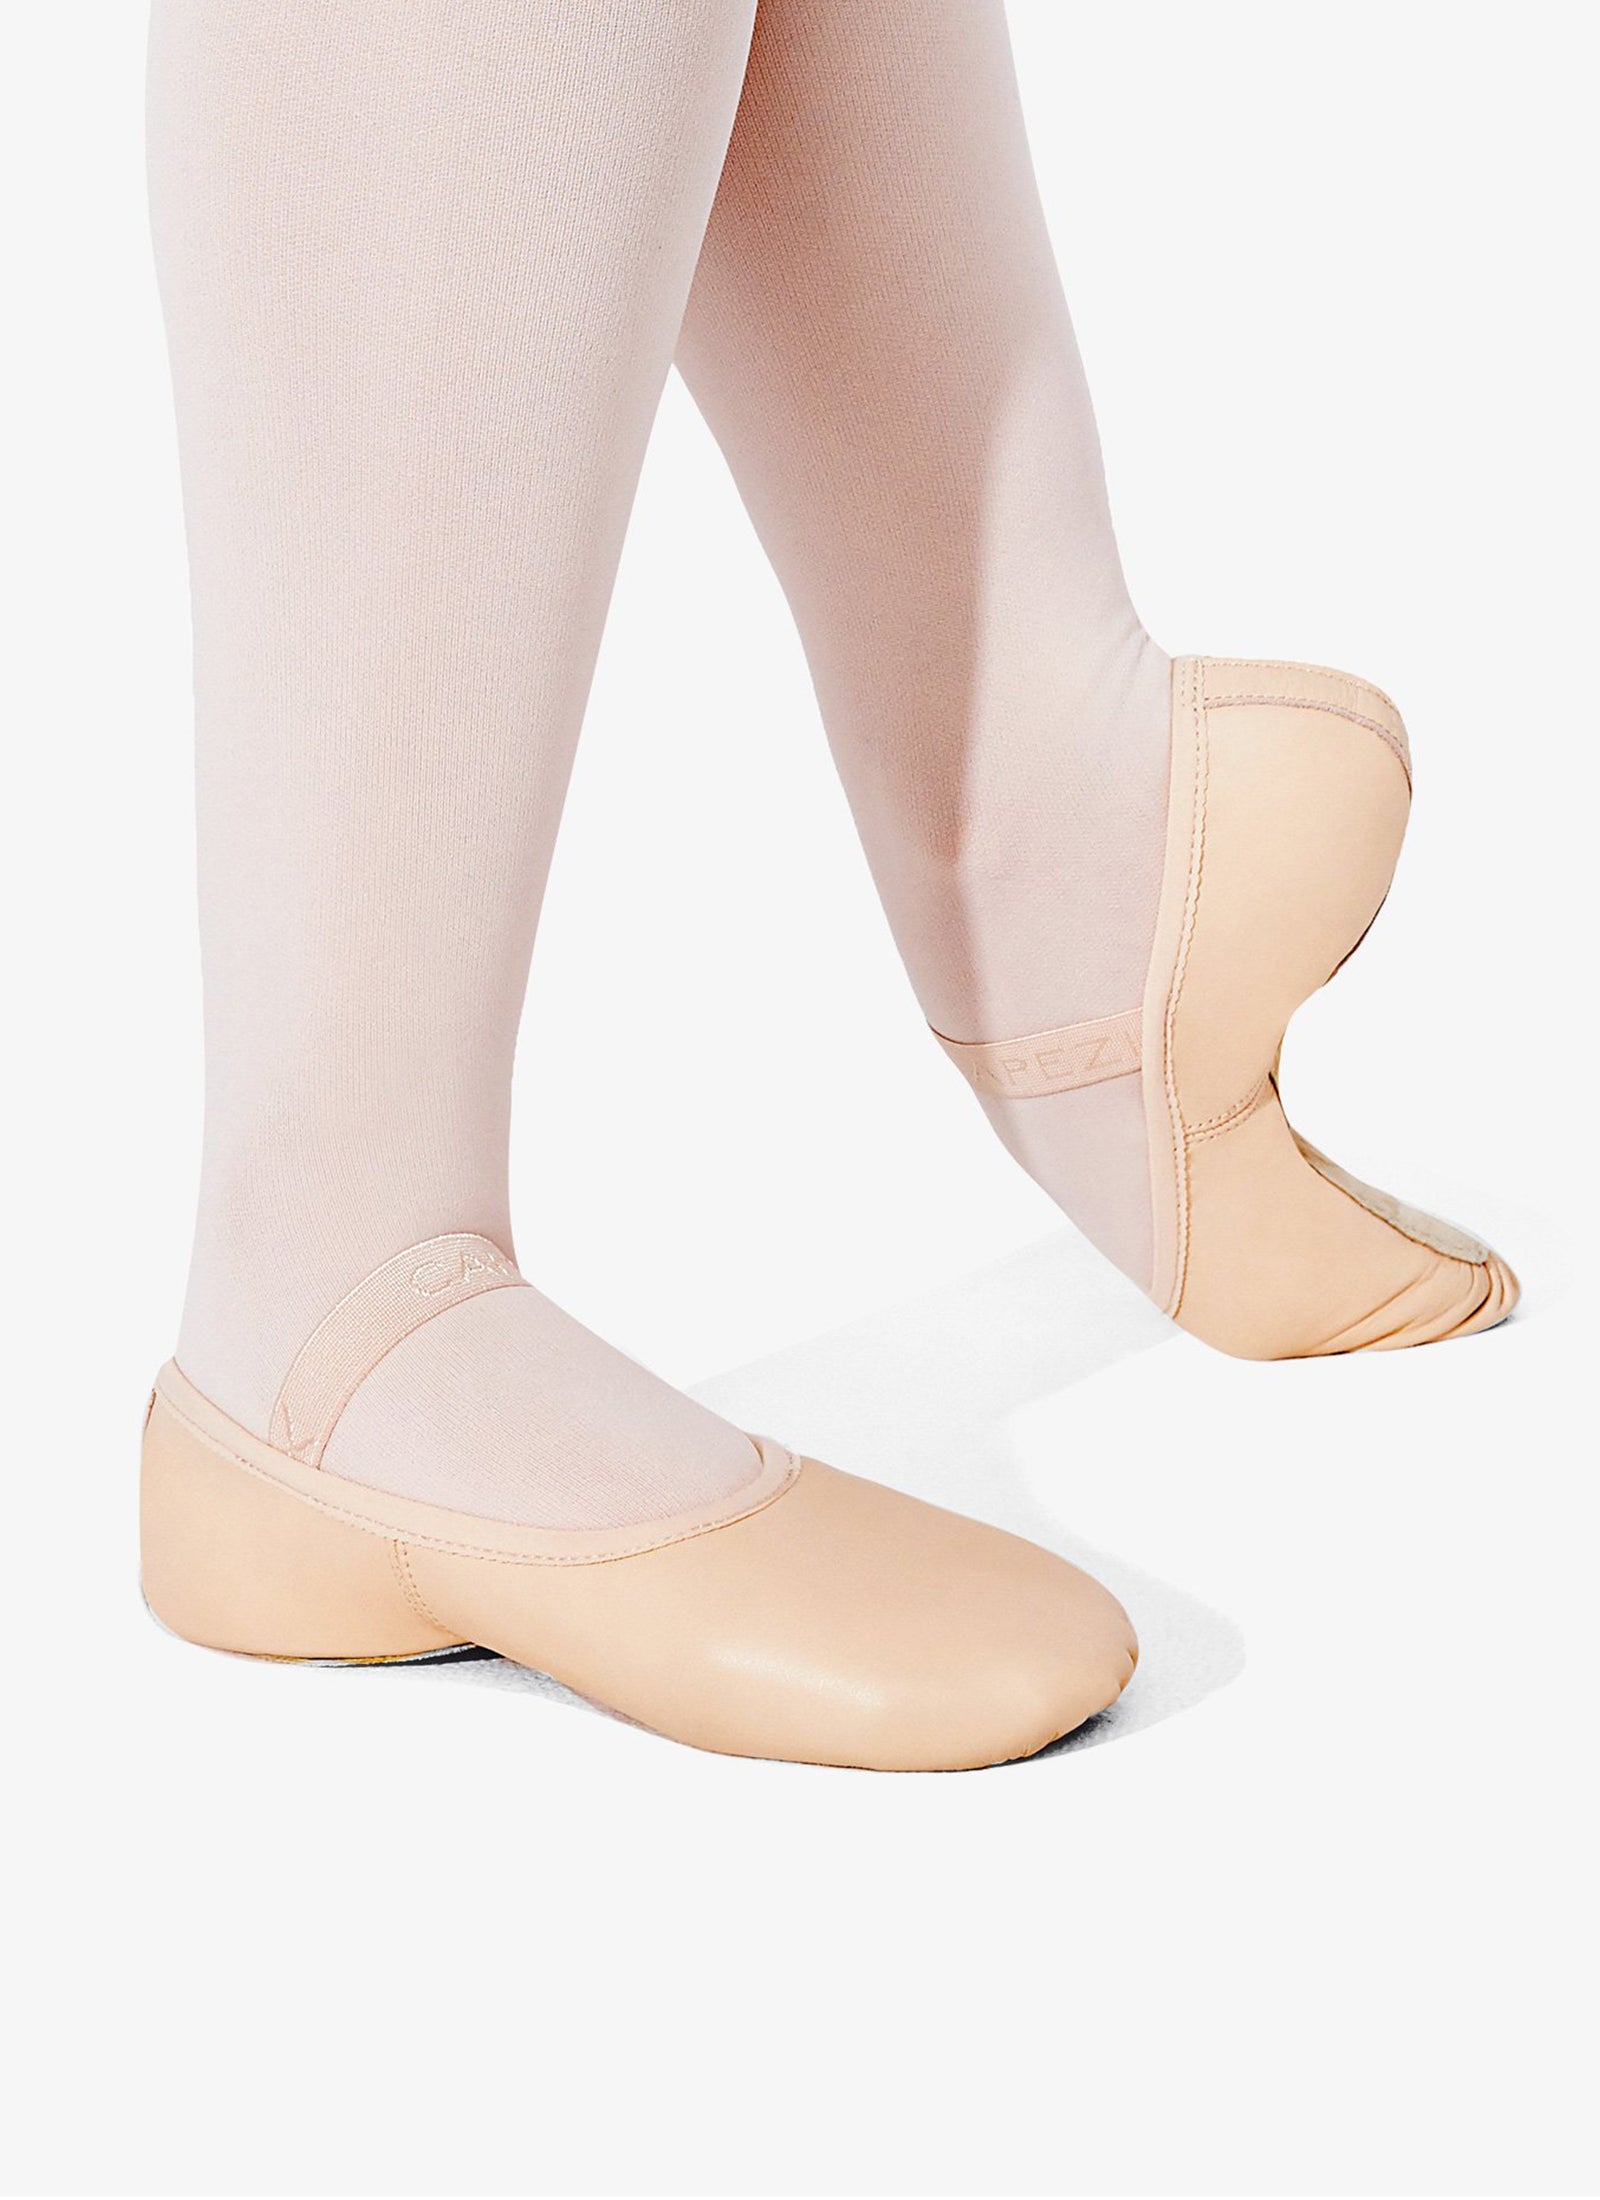 Capezio Lily Ballet Shoe